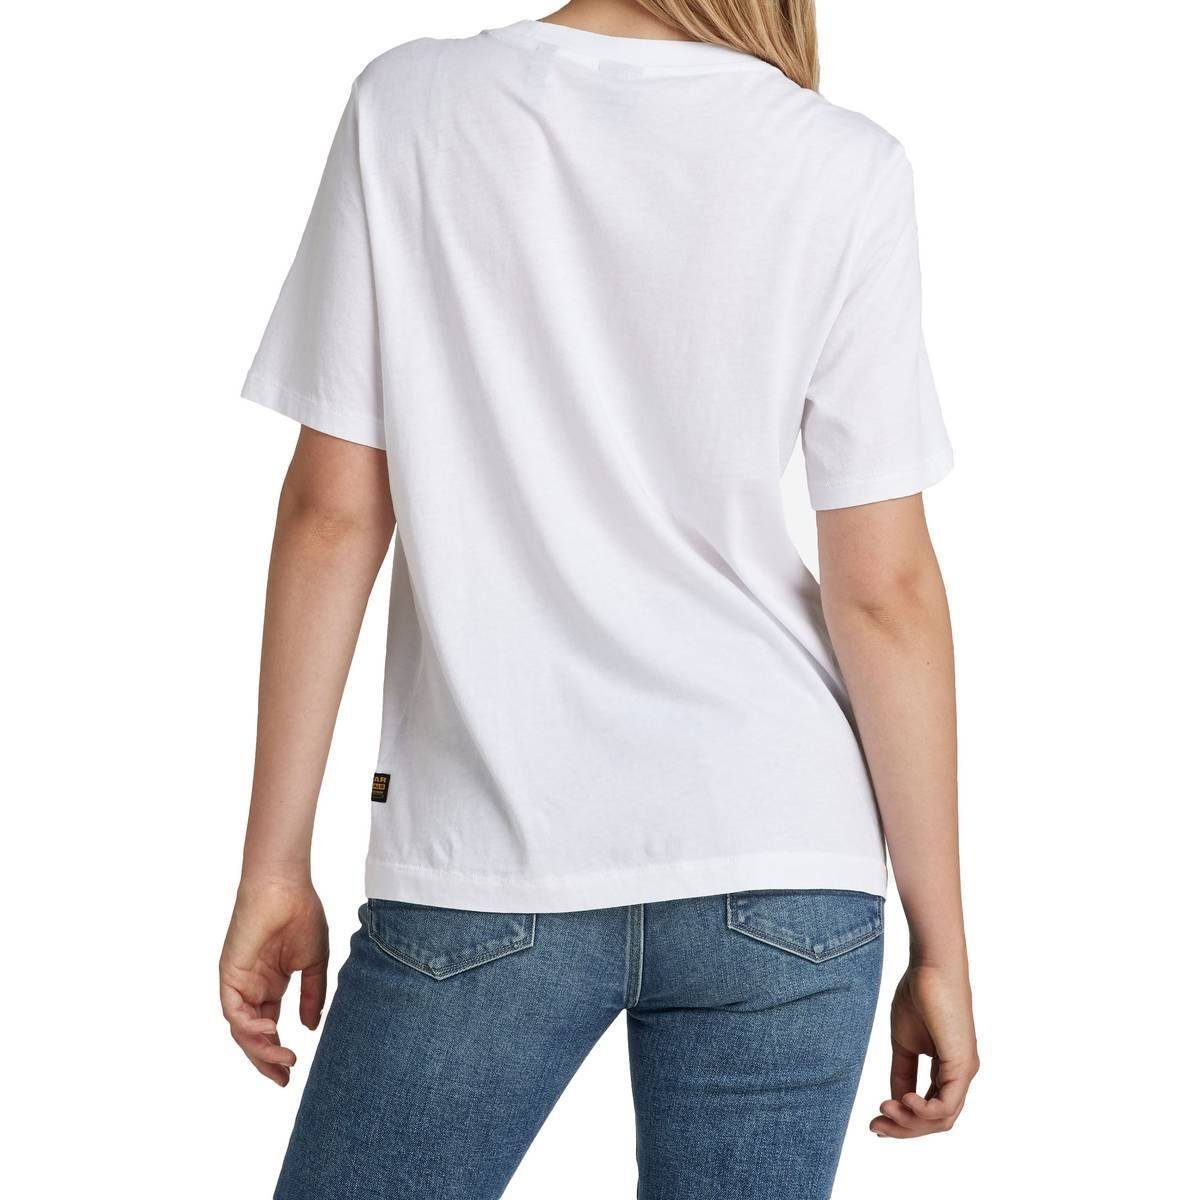 Originals T-Shirt Weiß - RAW G-Star Damen Fit Label T-Shirt Regular